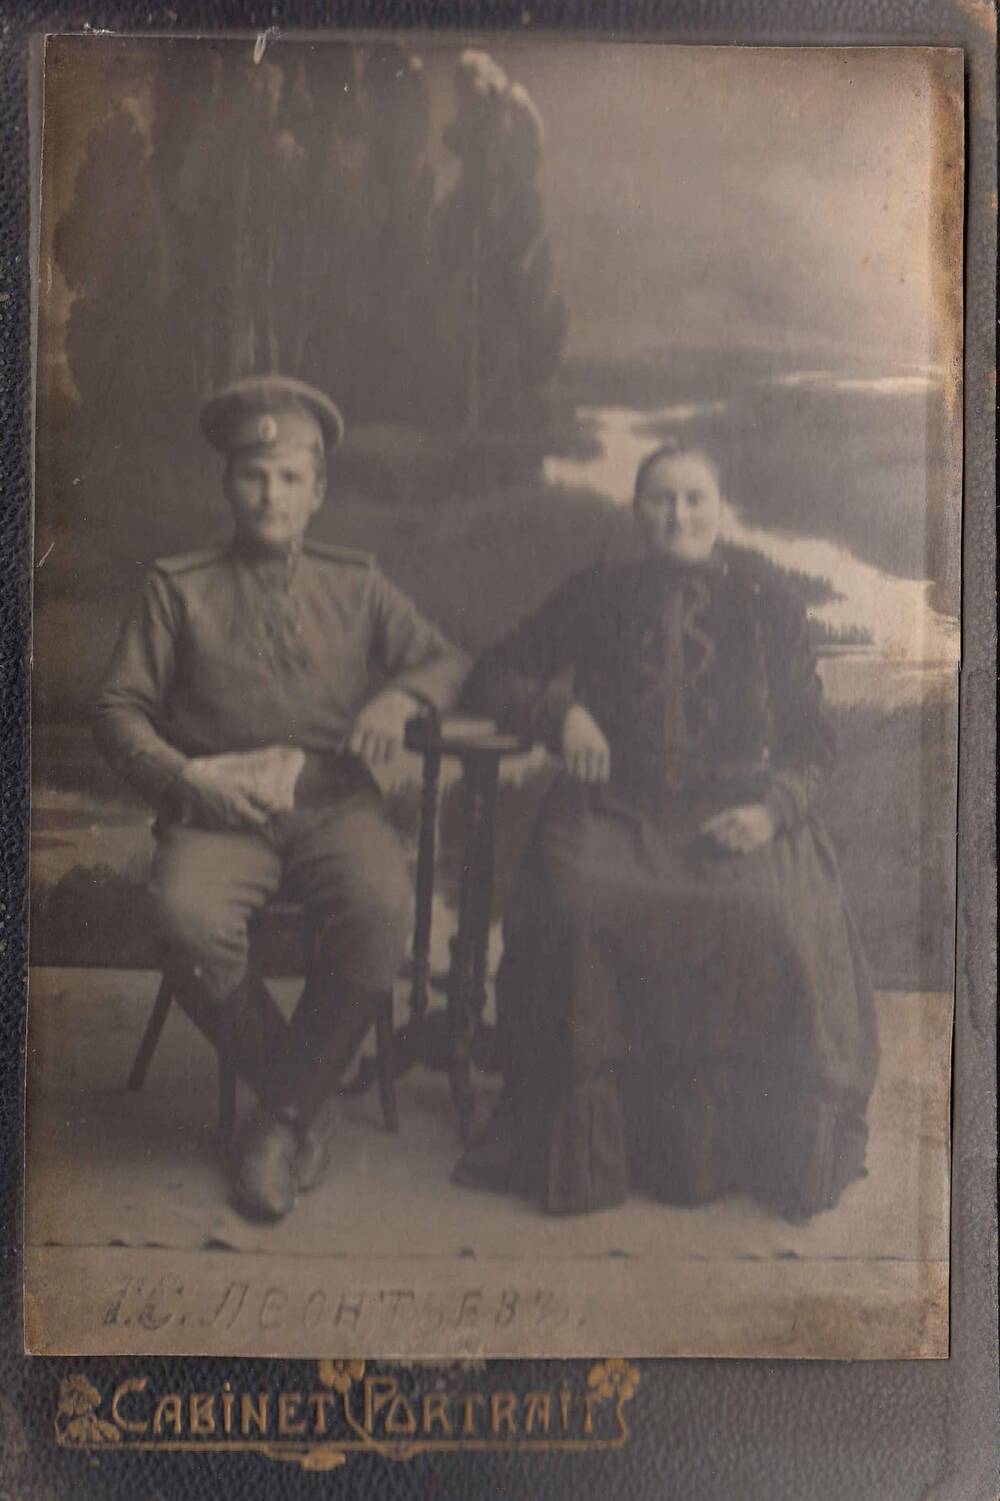 Фотография чернобелая изображением мужчины и женщины средних лет, сидящих на стульях.